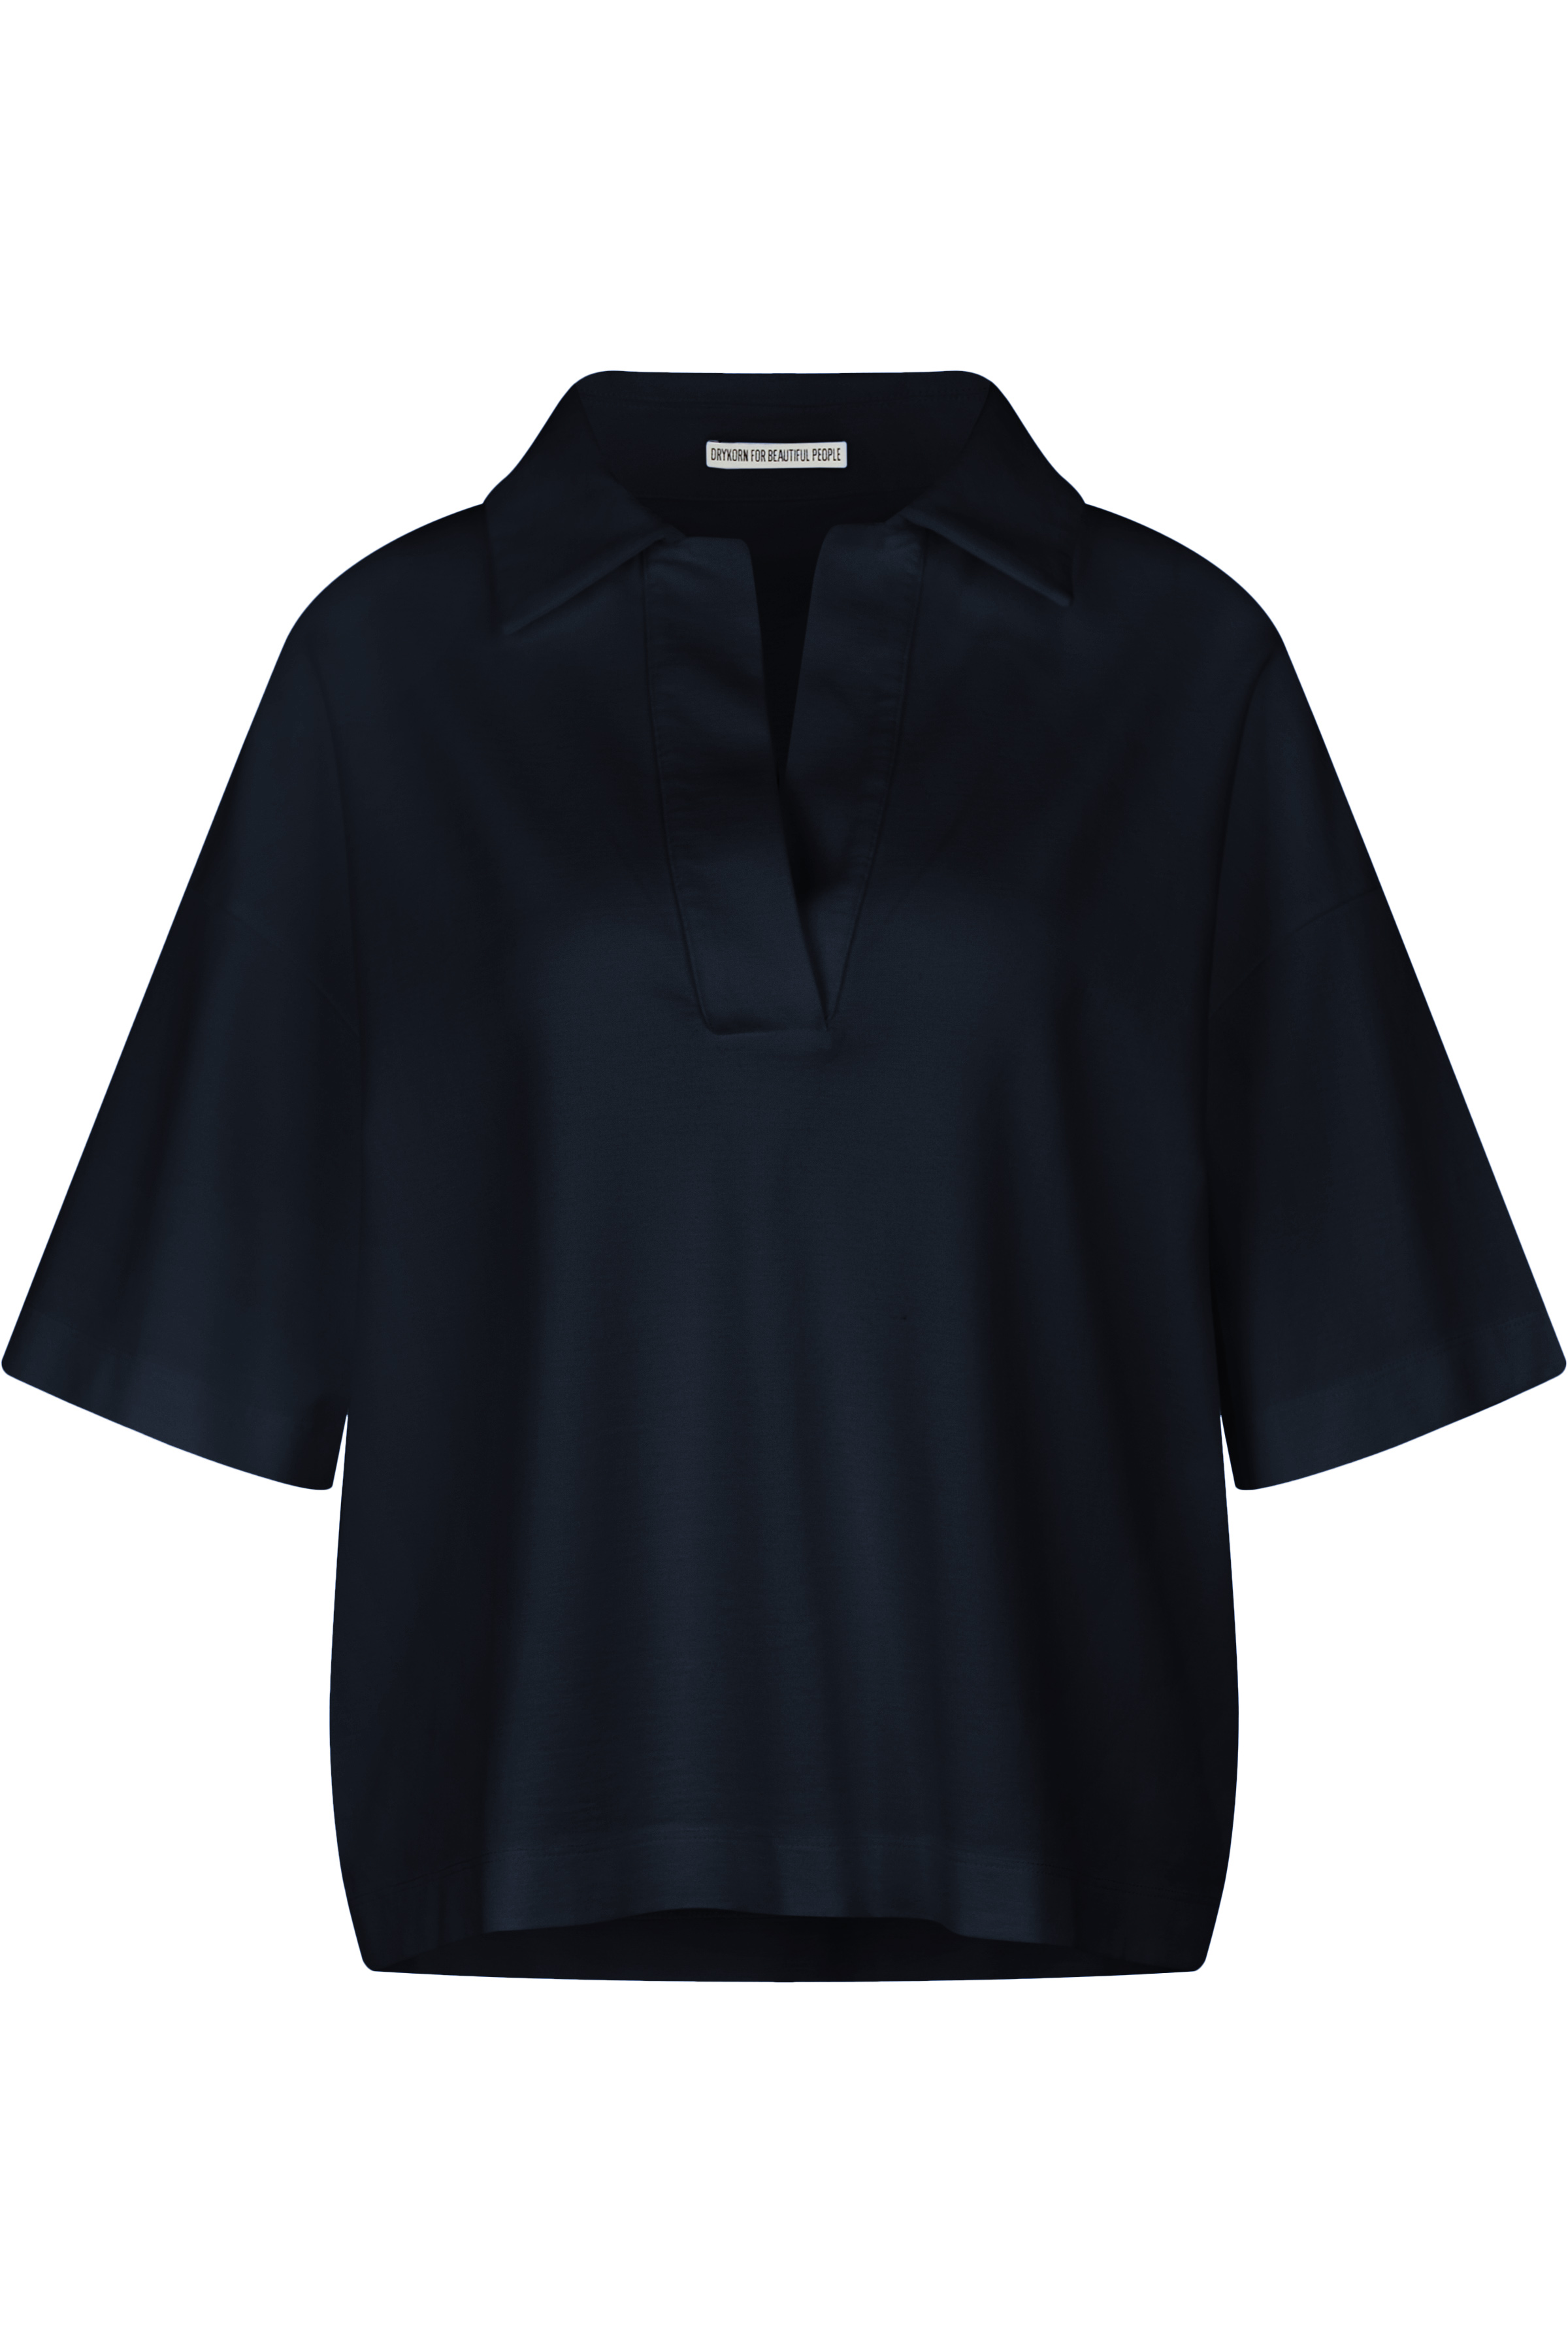 DRYKORN 522013 JARNA 10 Damen Poloshirt aus leichtem Material-Mix Black Schwarz 1000